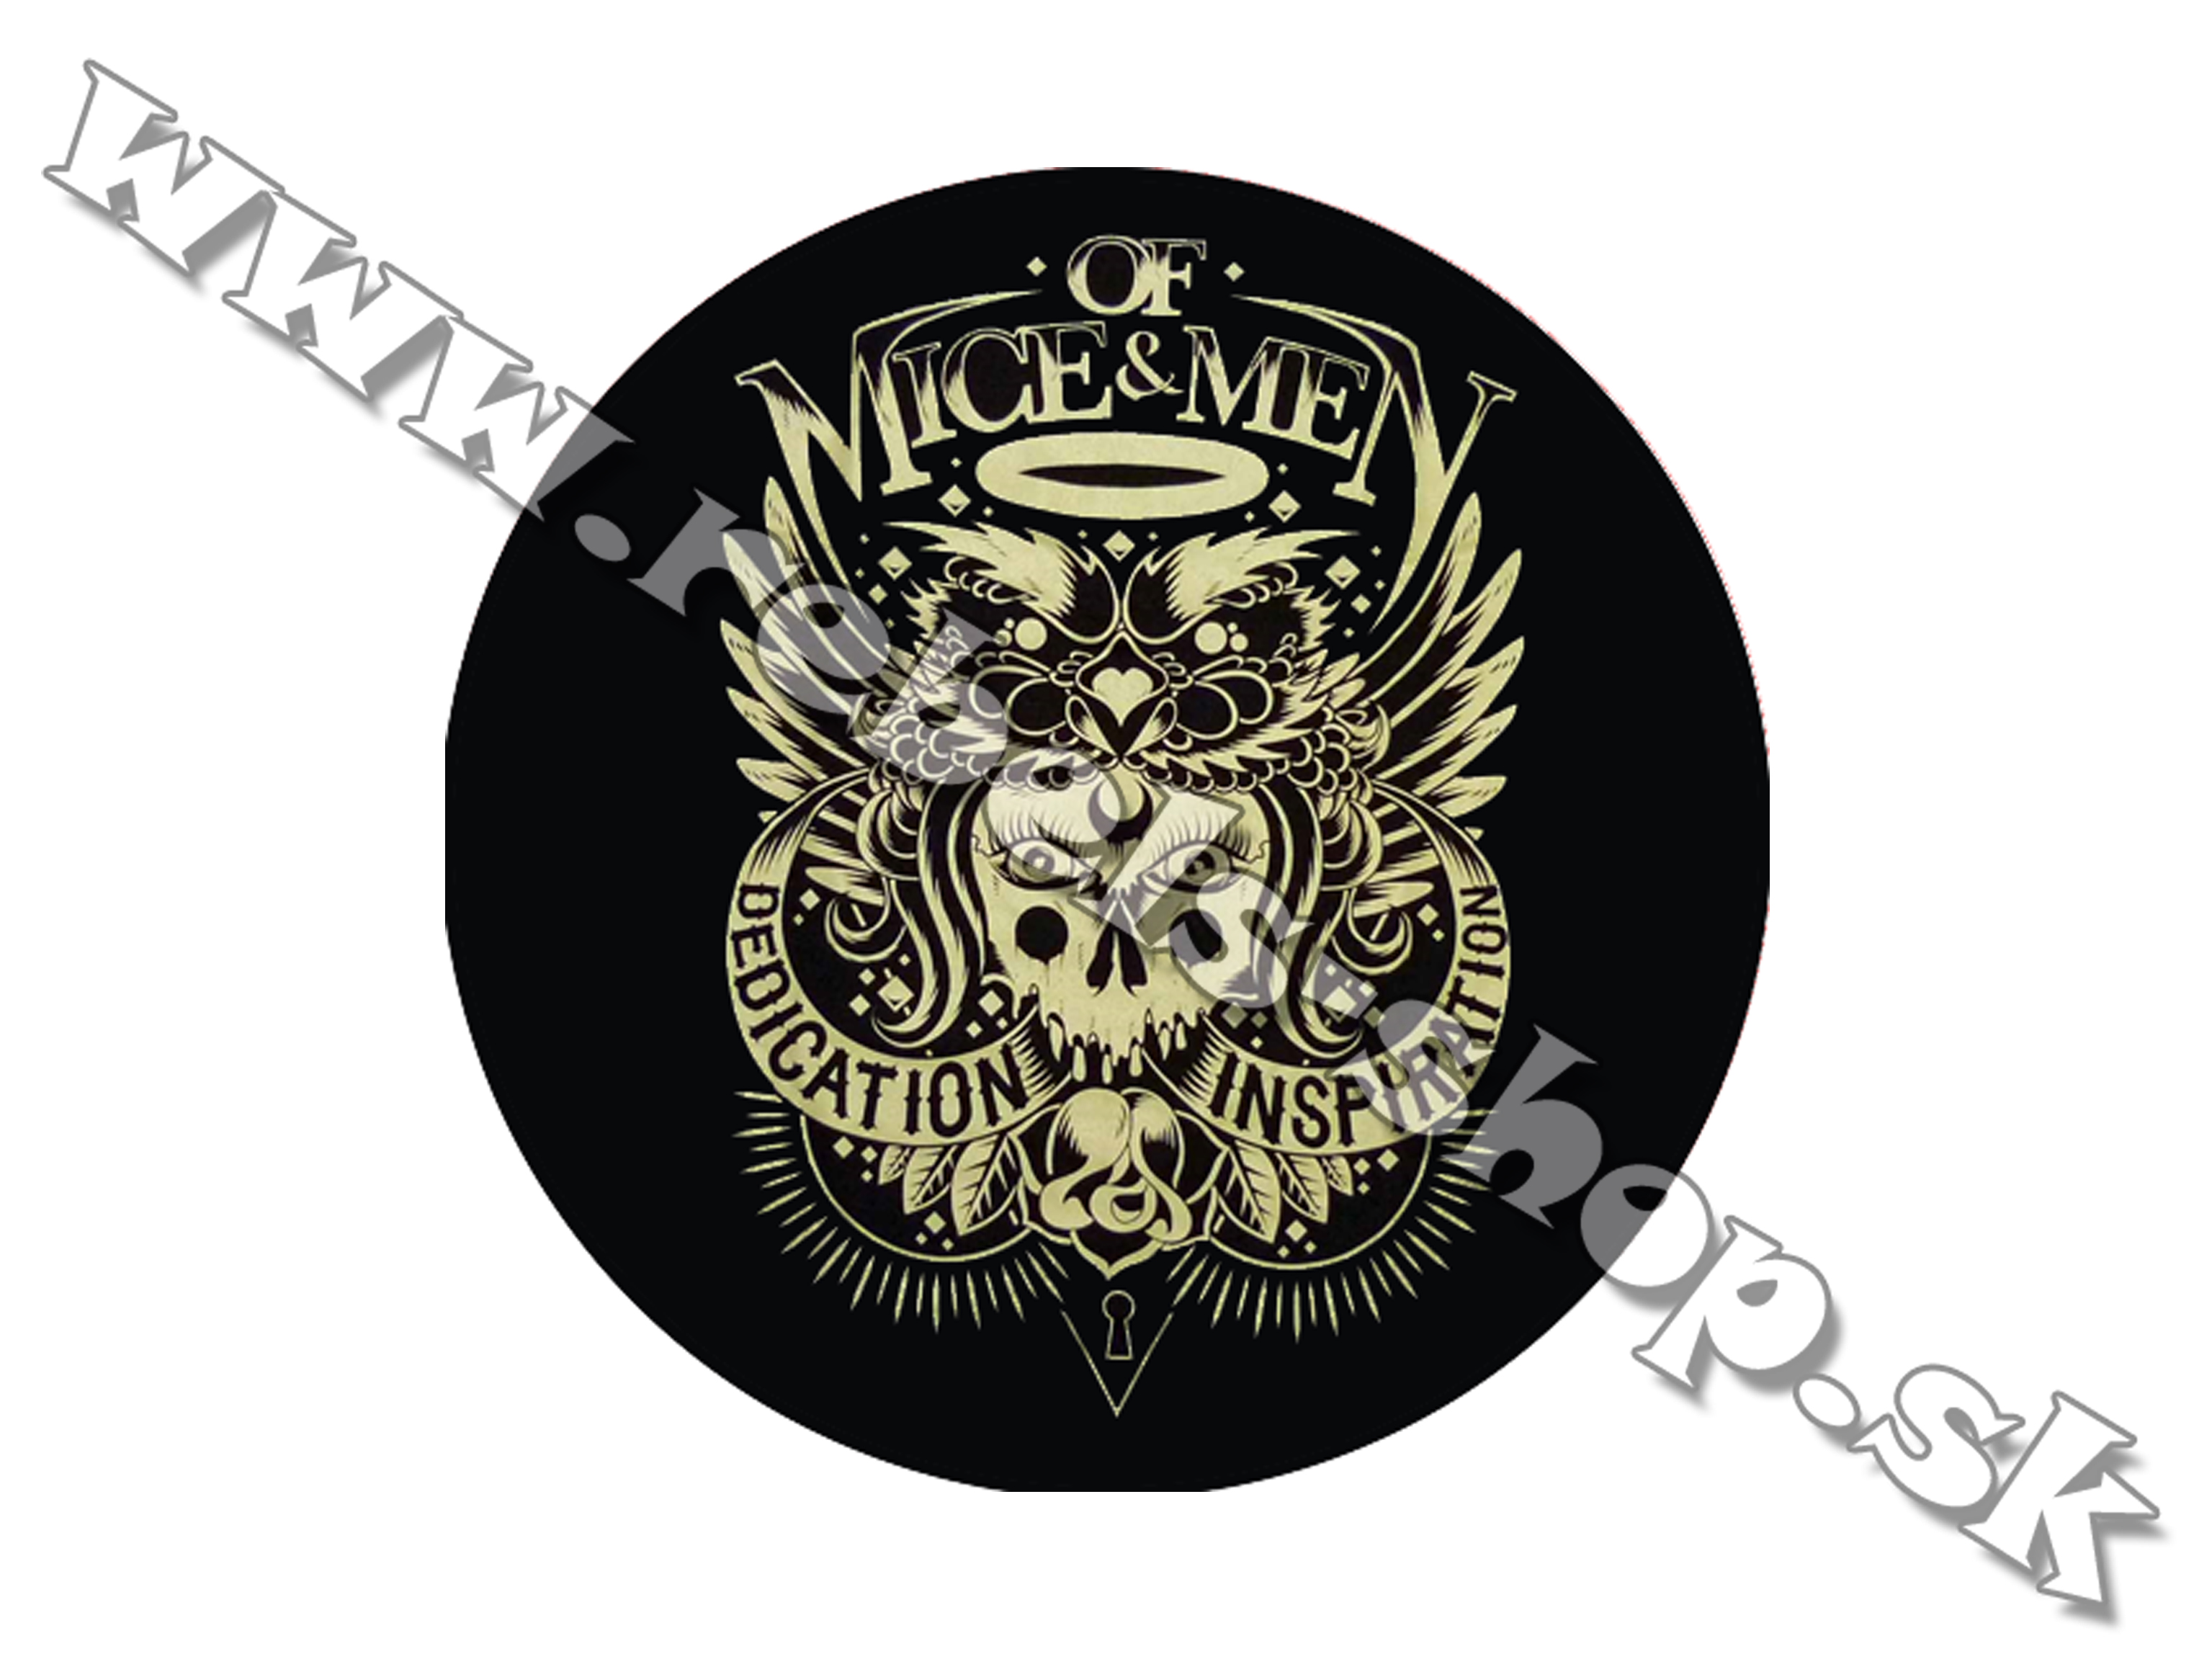 Odznak "Of Mice & Men"